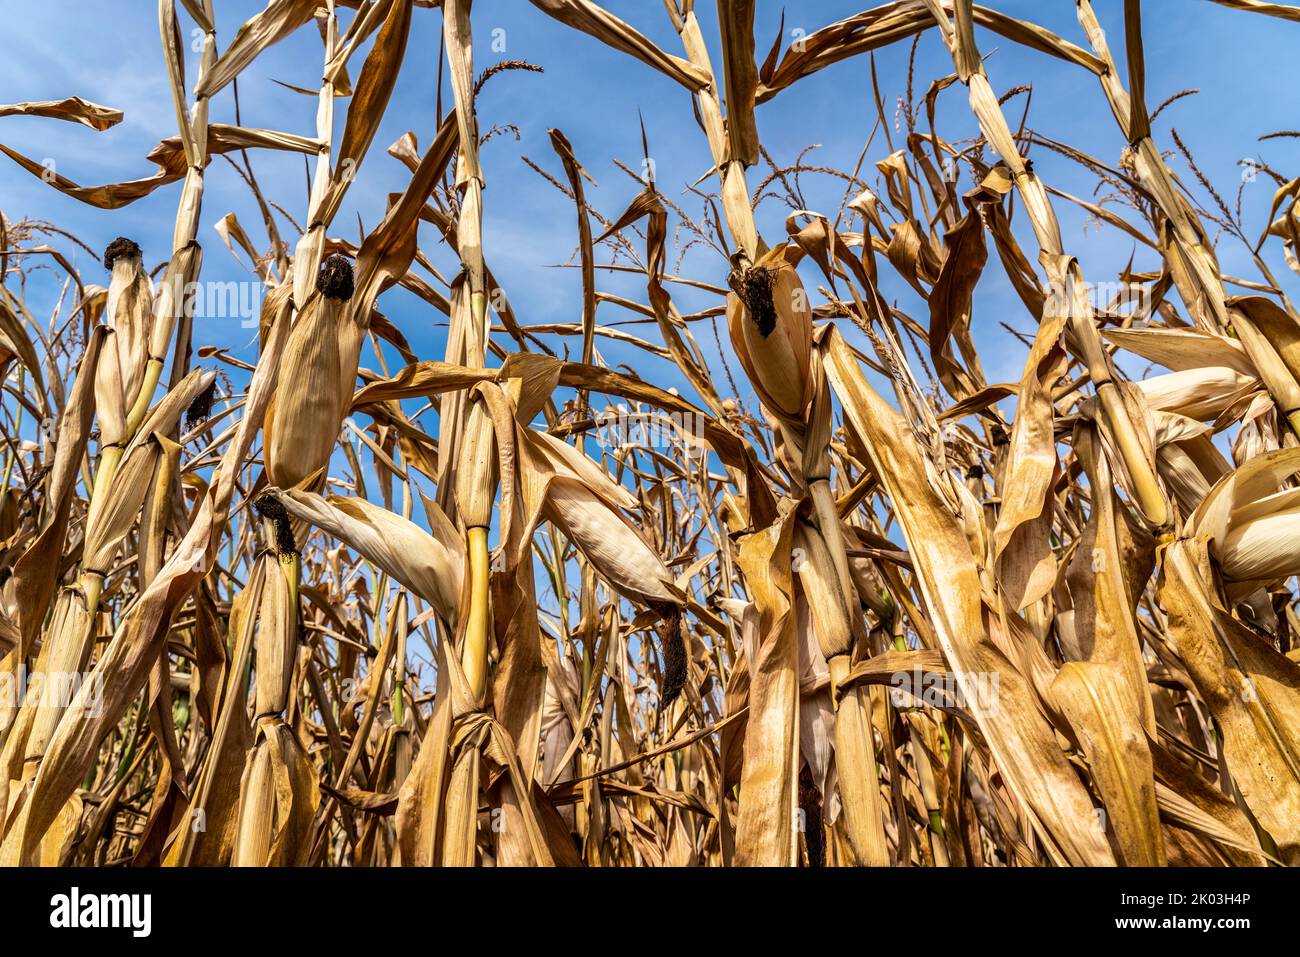 Maisfeld vertrocknet und nur niedrig gewachsen, kleine Maiskolben, durch die Sommer Trockenheit, Dürre, BEI Goch am Niederhein, NRW, Deutschland Banque D'Images